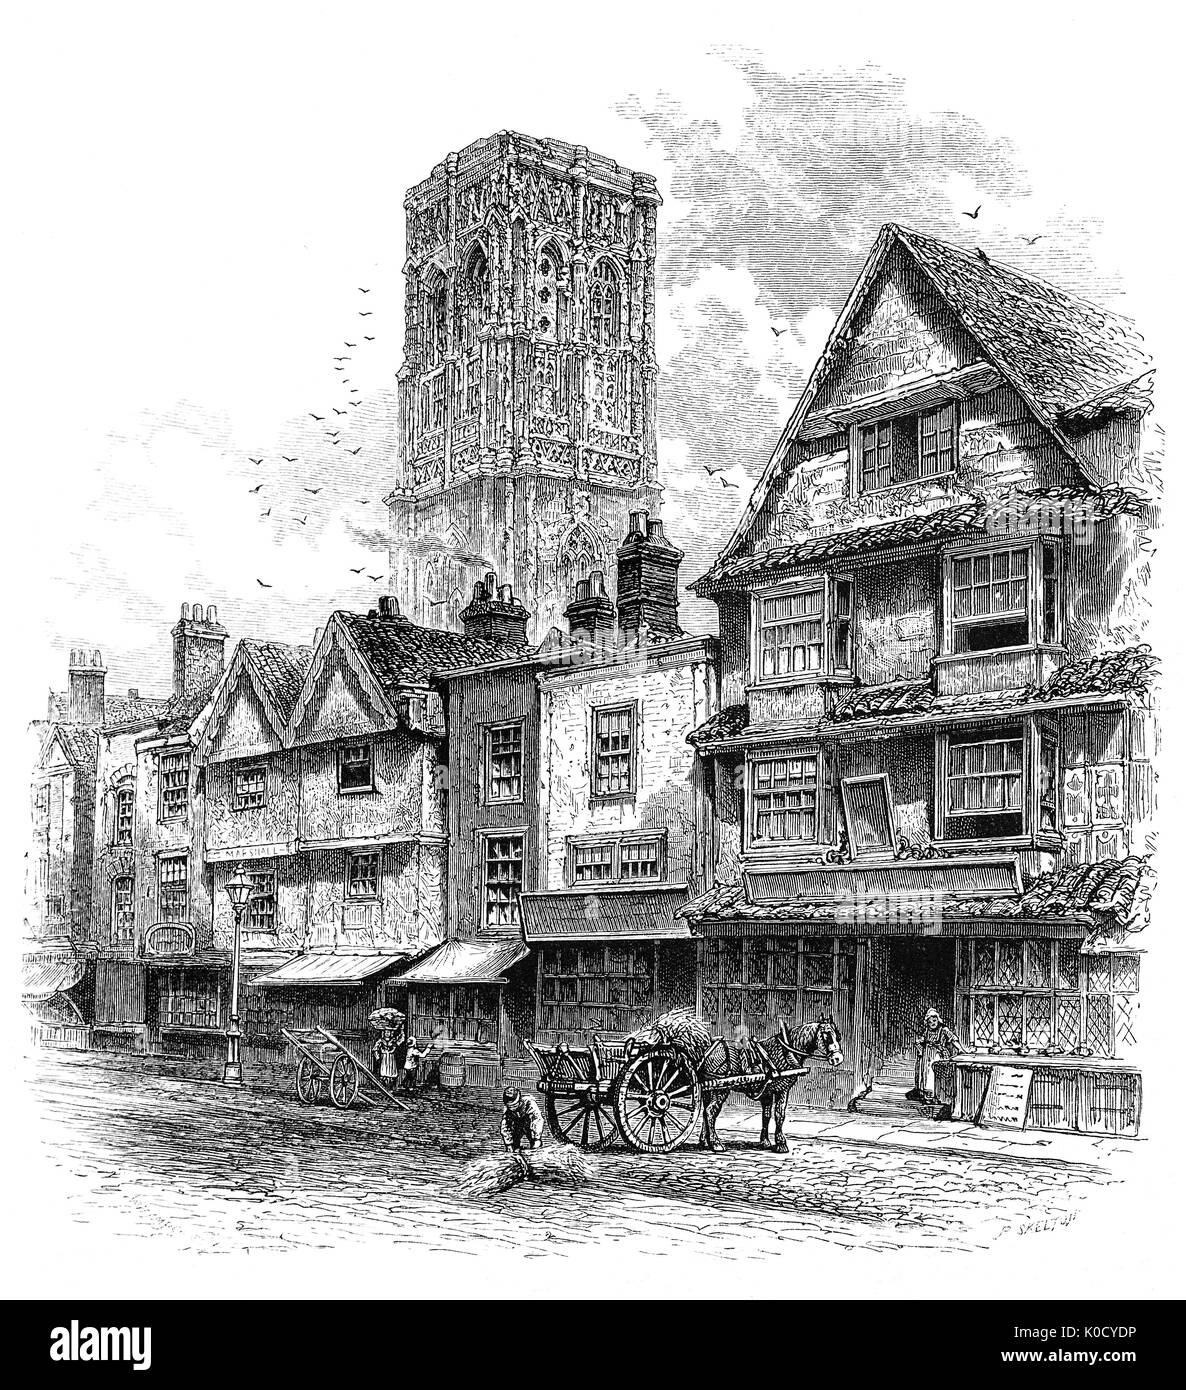 1870: Eine Skizze der Temple Street in Bristol, nahezu unverändert seit den Tagen der Königin Elizabeth I. flämische Weber, nach England von König Edward III brachte sich dort nieder, und prächtig, bis auf dem Tuch Handel nach Norden verschoben. Stockfoto